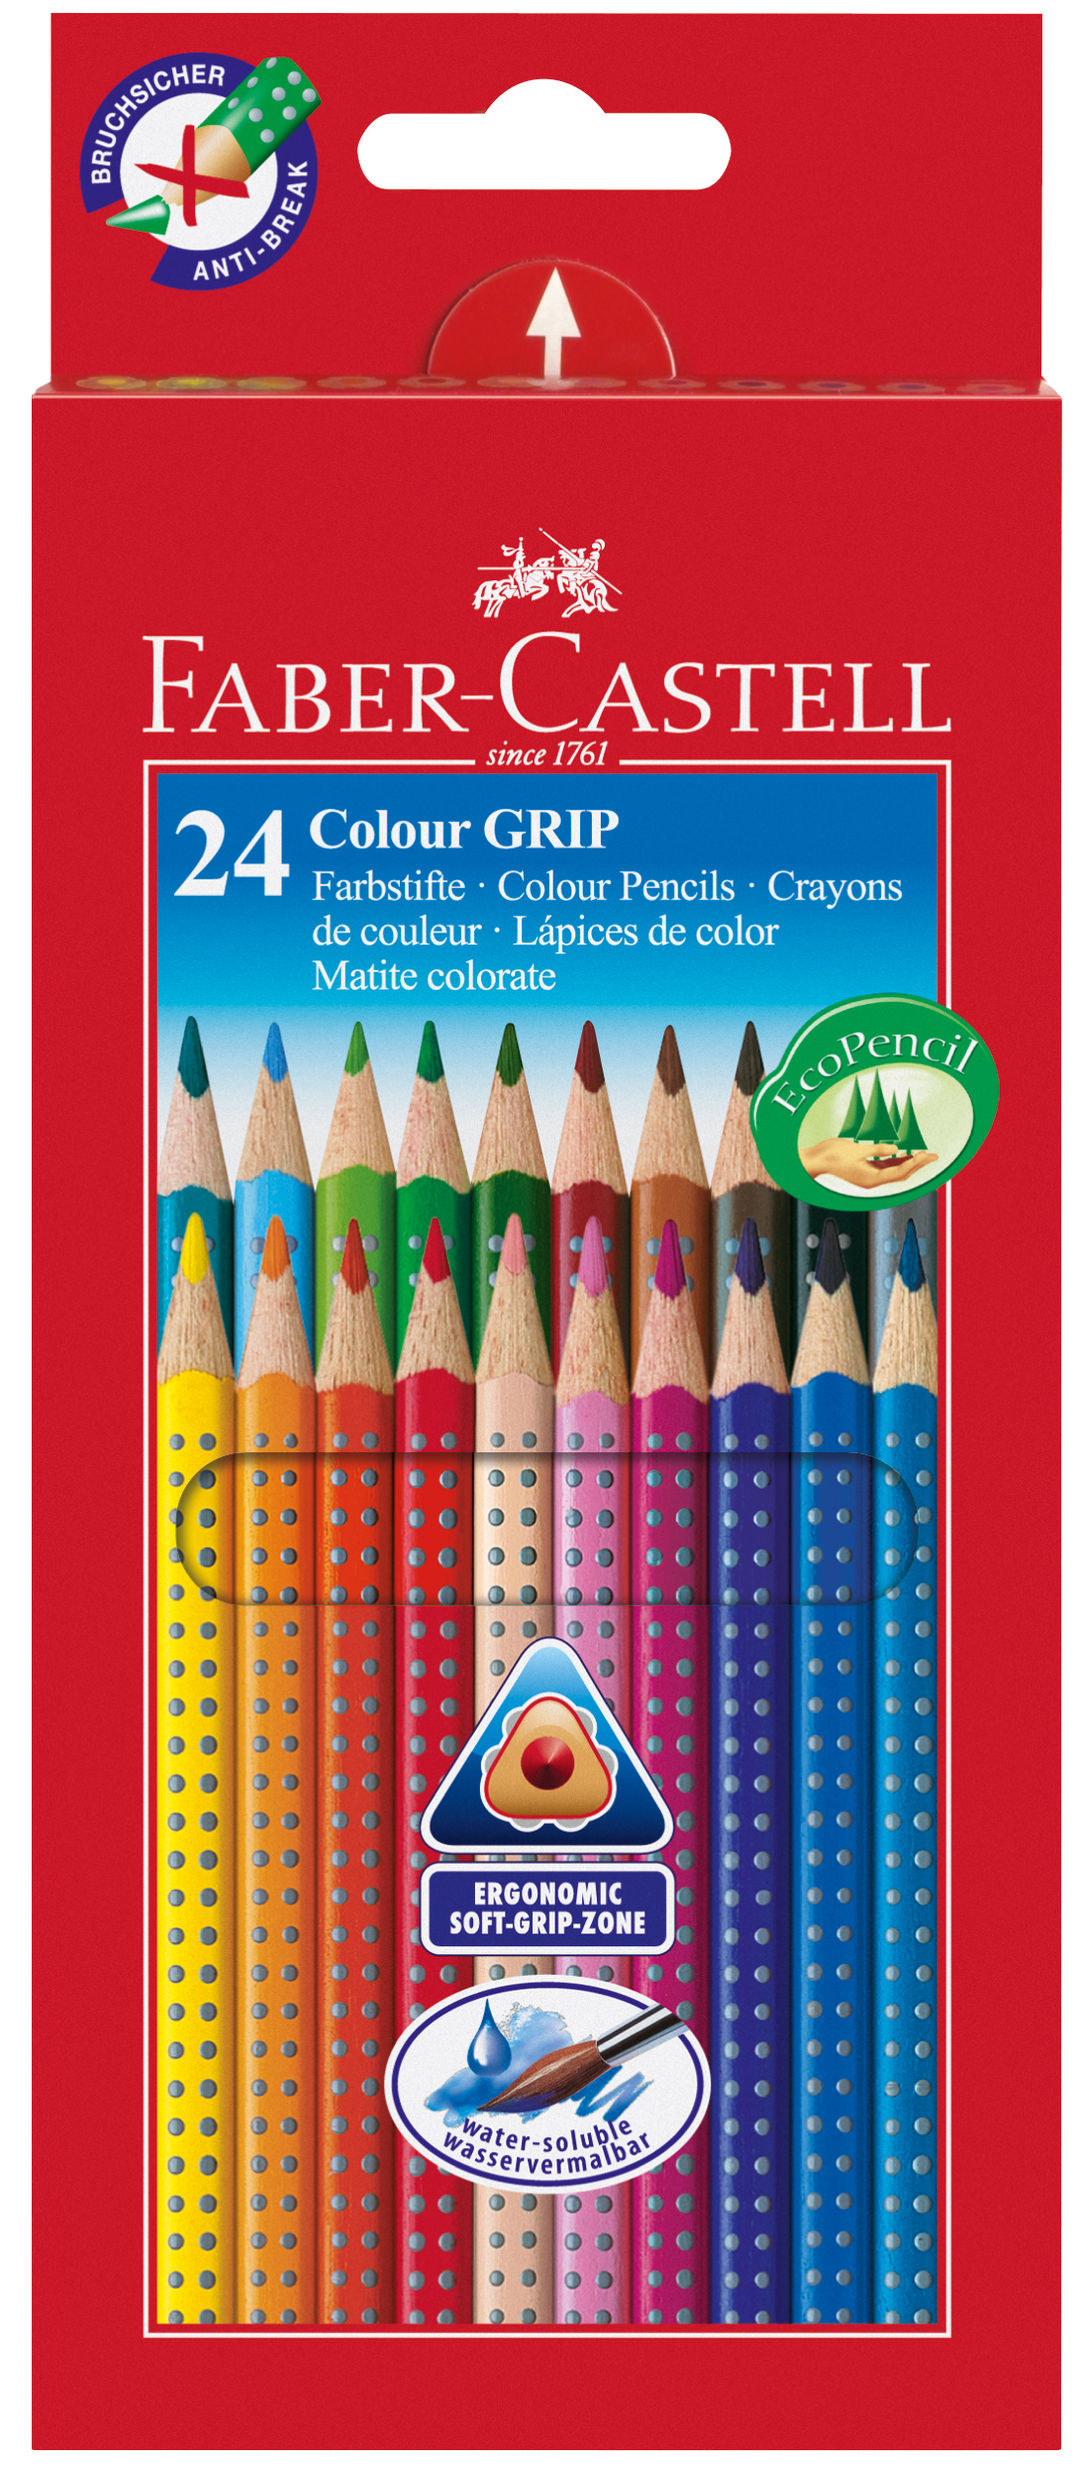 Faber-Castell Farbstifte Colour GRIP, 24 Stück | Weltbild.de